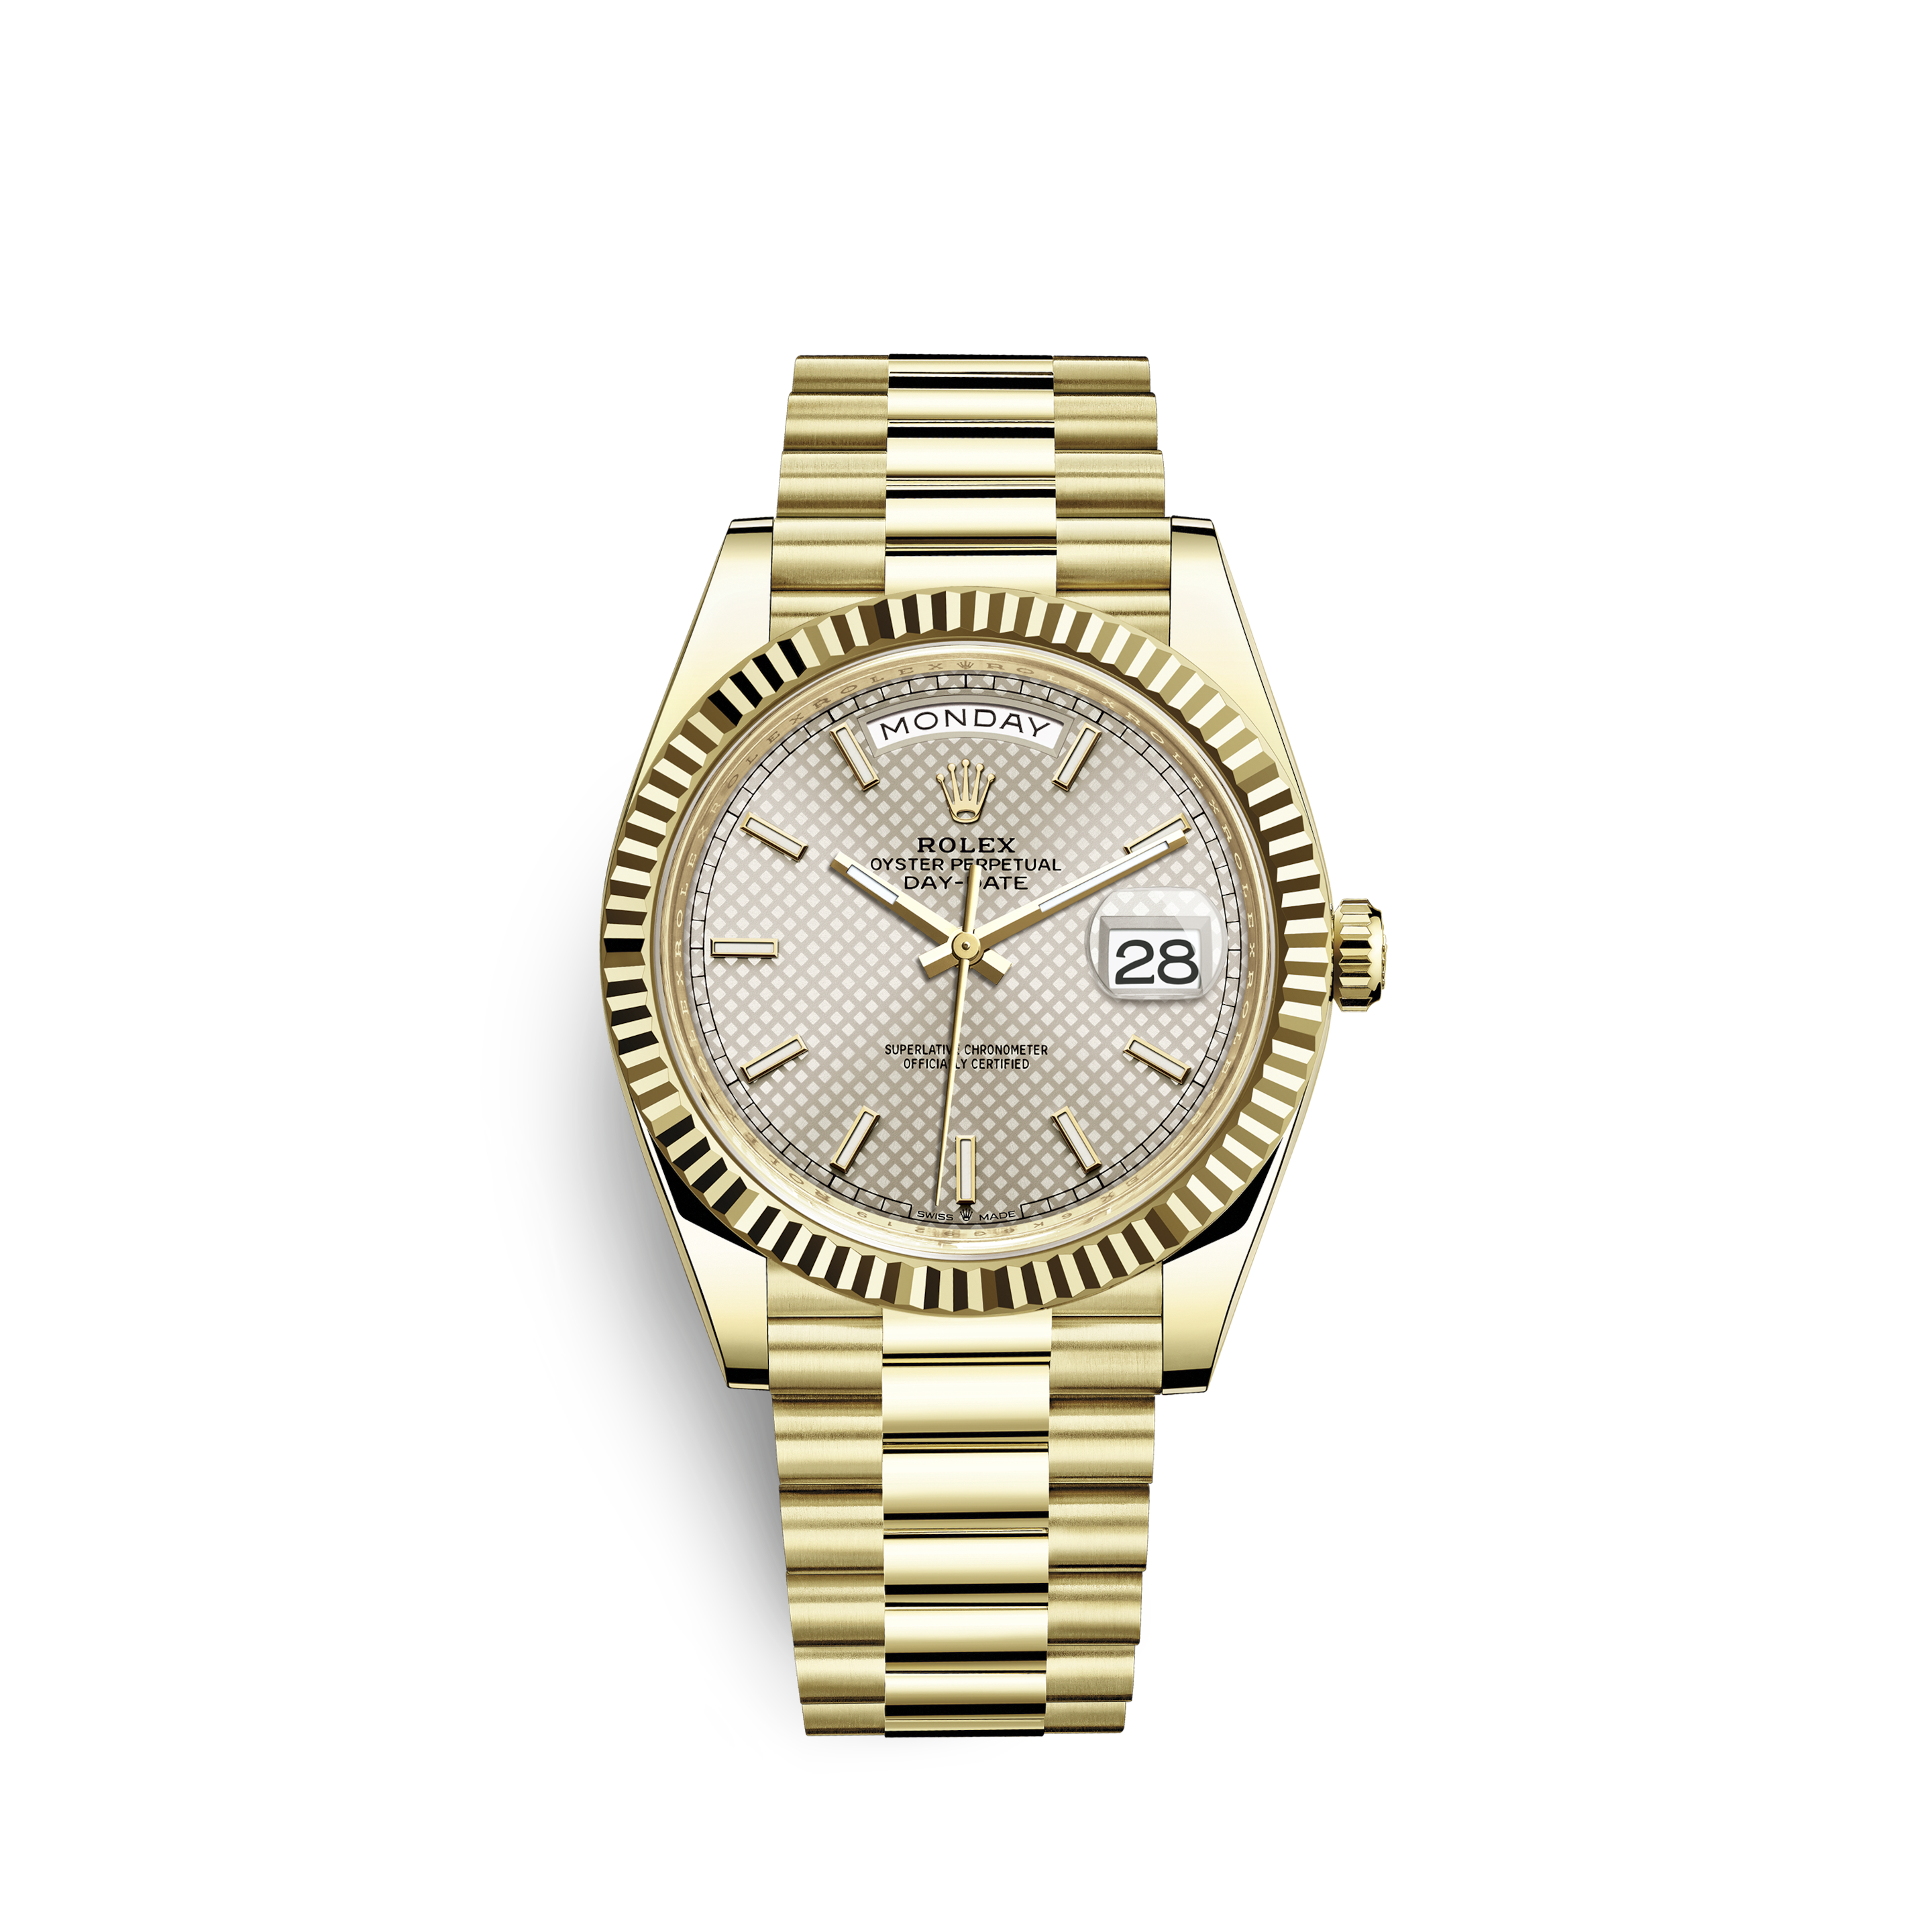 original gold rolex watch price